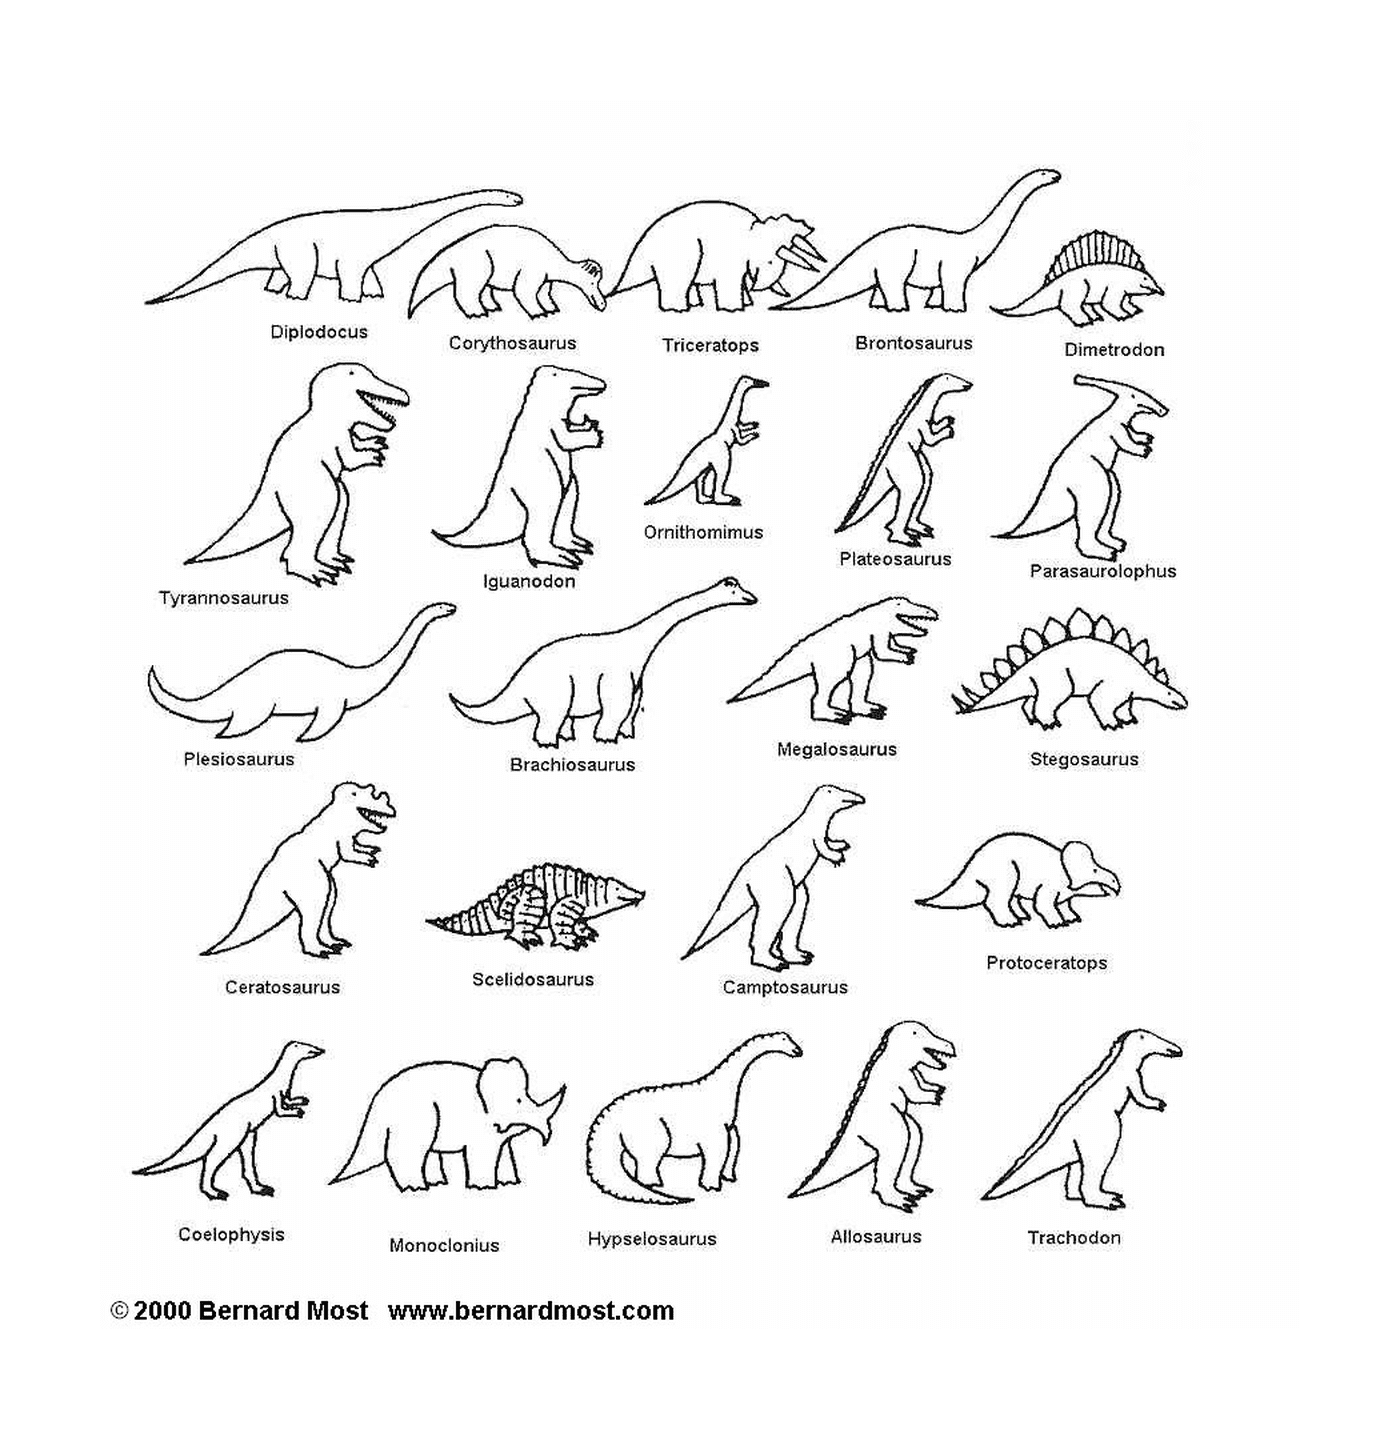  Elenco dettagliato dei diversi tipi di dinosauri 